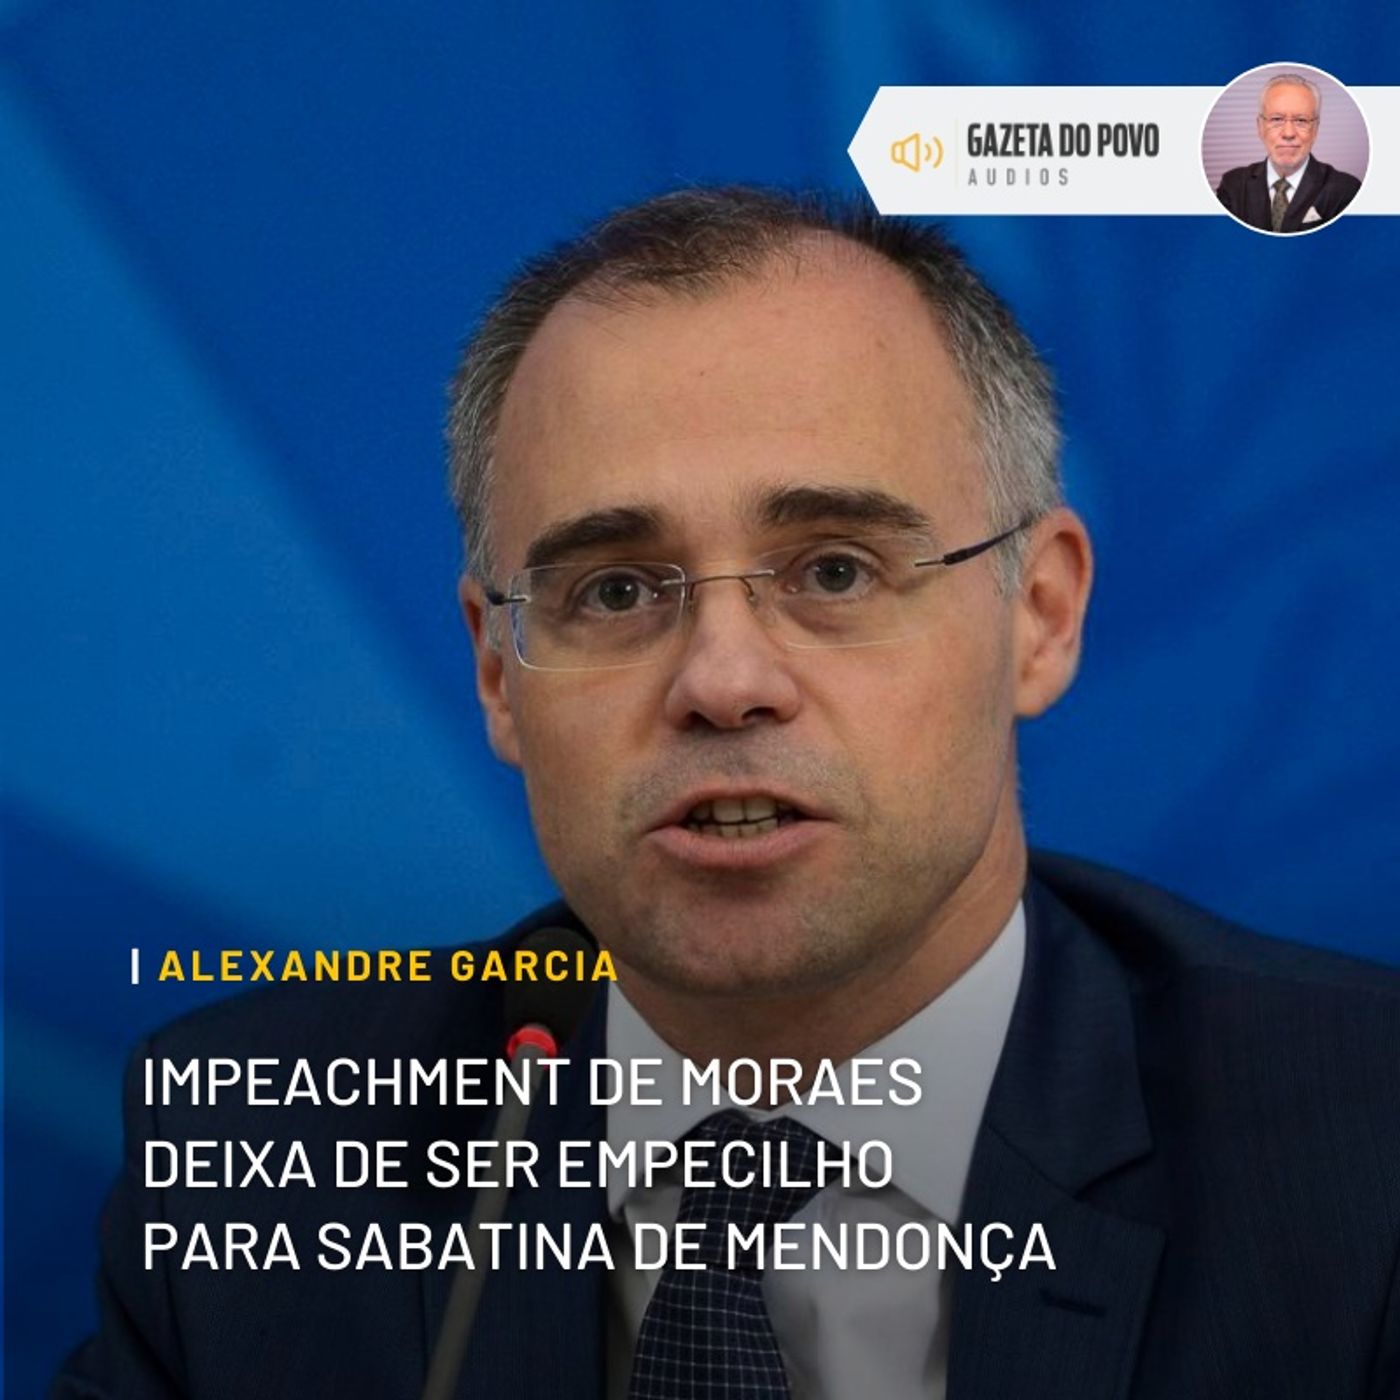 Impeachment de Moraes deixa de ser empecilho para sabatina de Mendonça